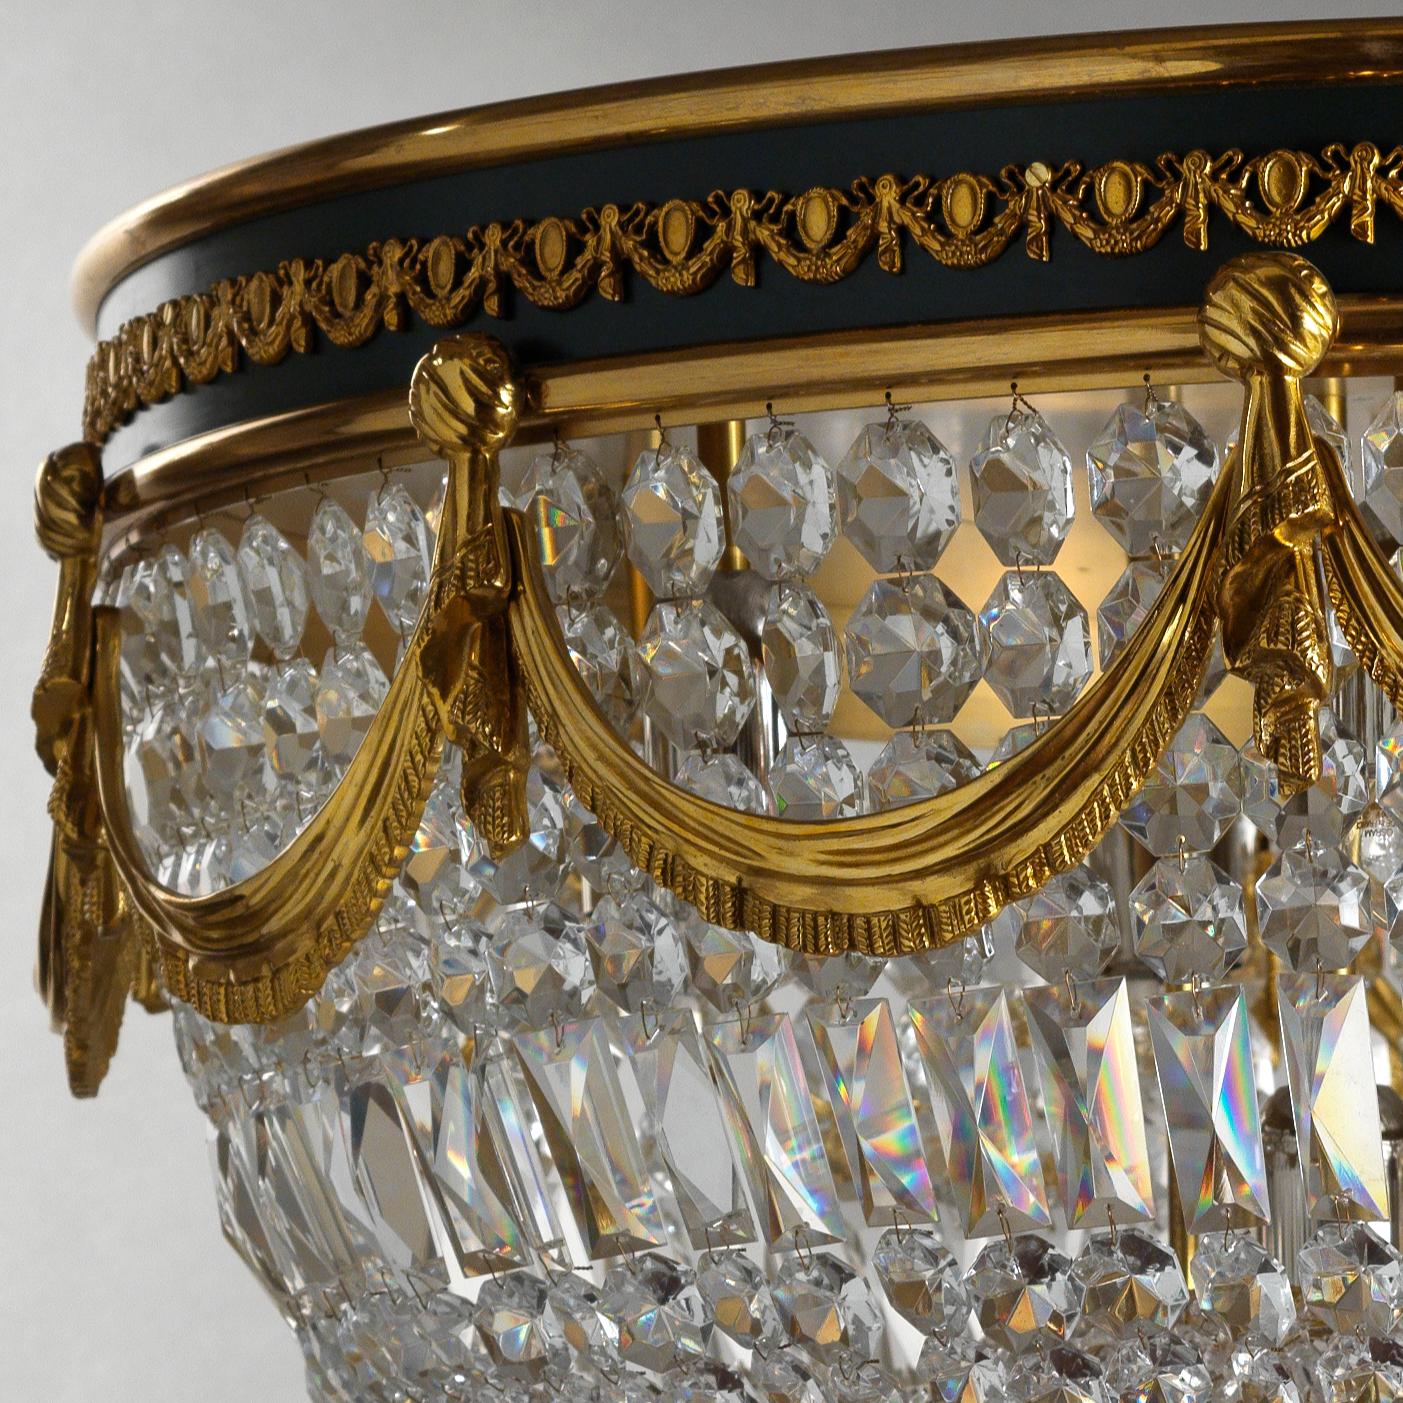 Ce grand luminaire à chasse d'eau de style néoclassique en bronze doré de Gherardo Degli Albizzi présente des détails de haute qualité. La bande principale en bronze doré est caractérisée par deux profils circulaires avec une bande émaillée verte. À